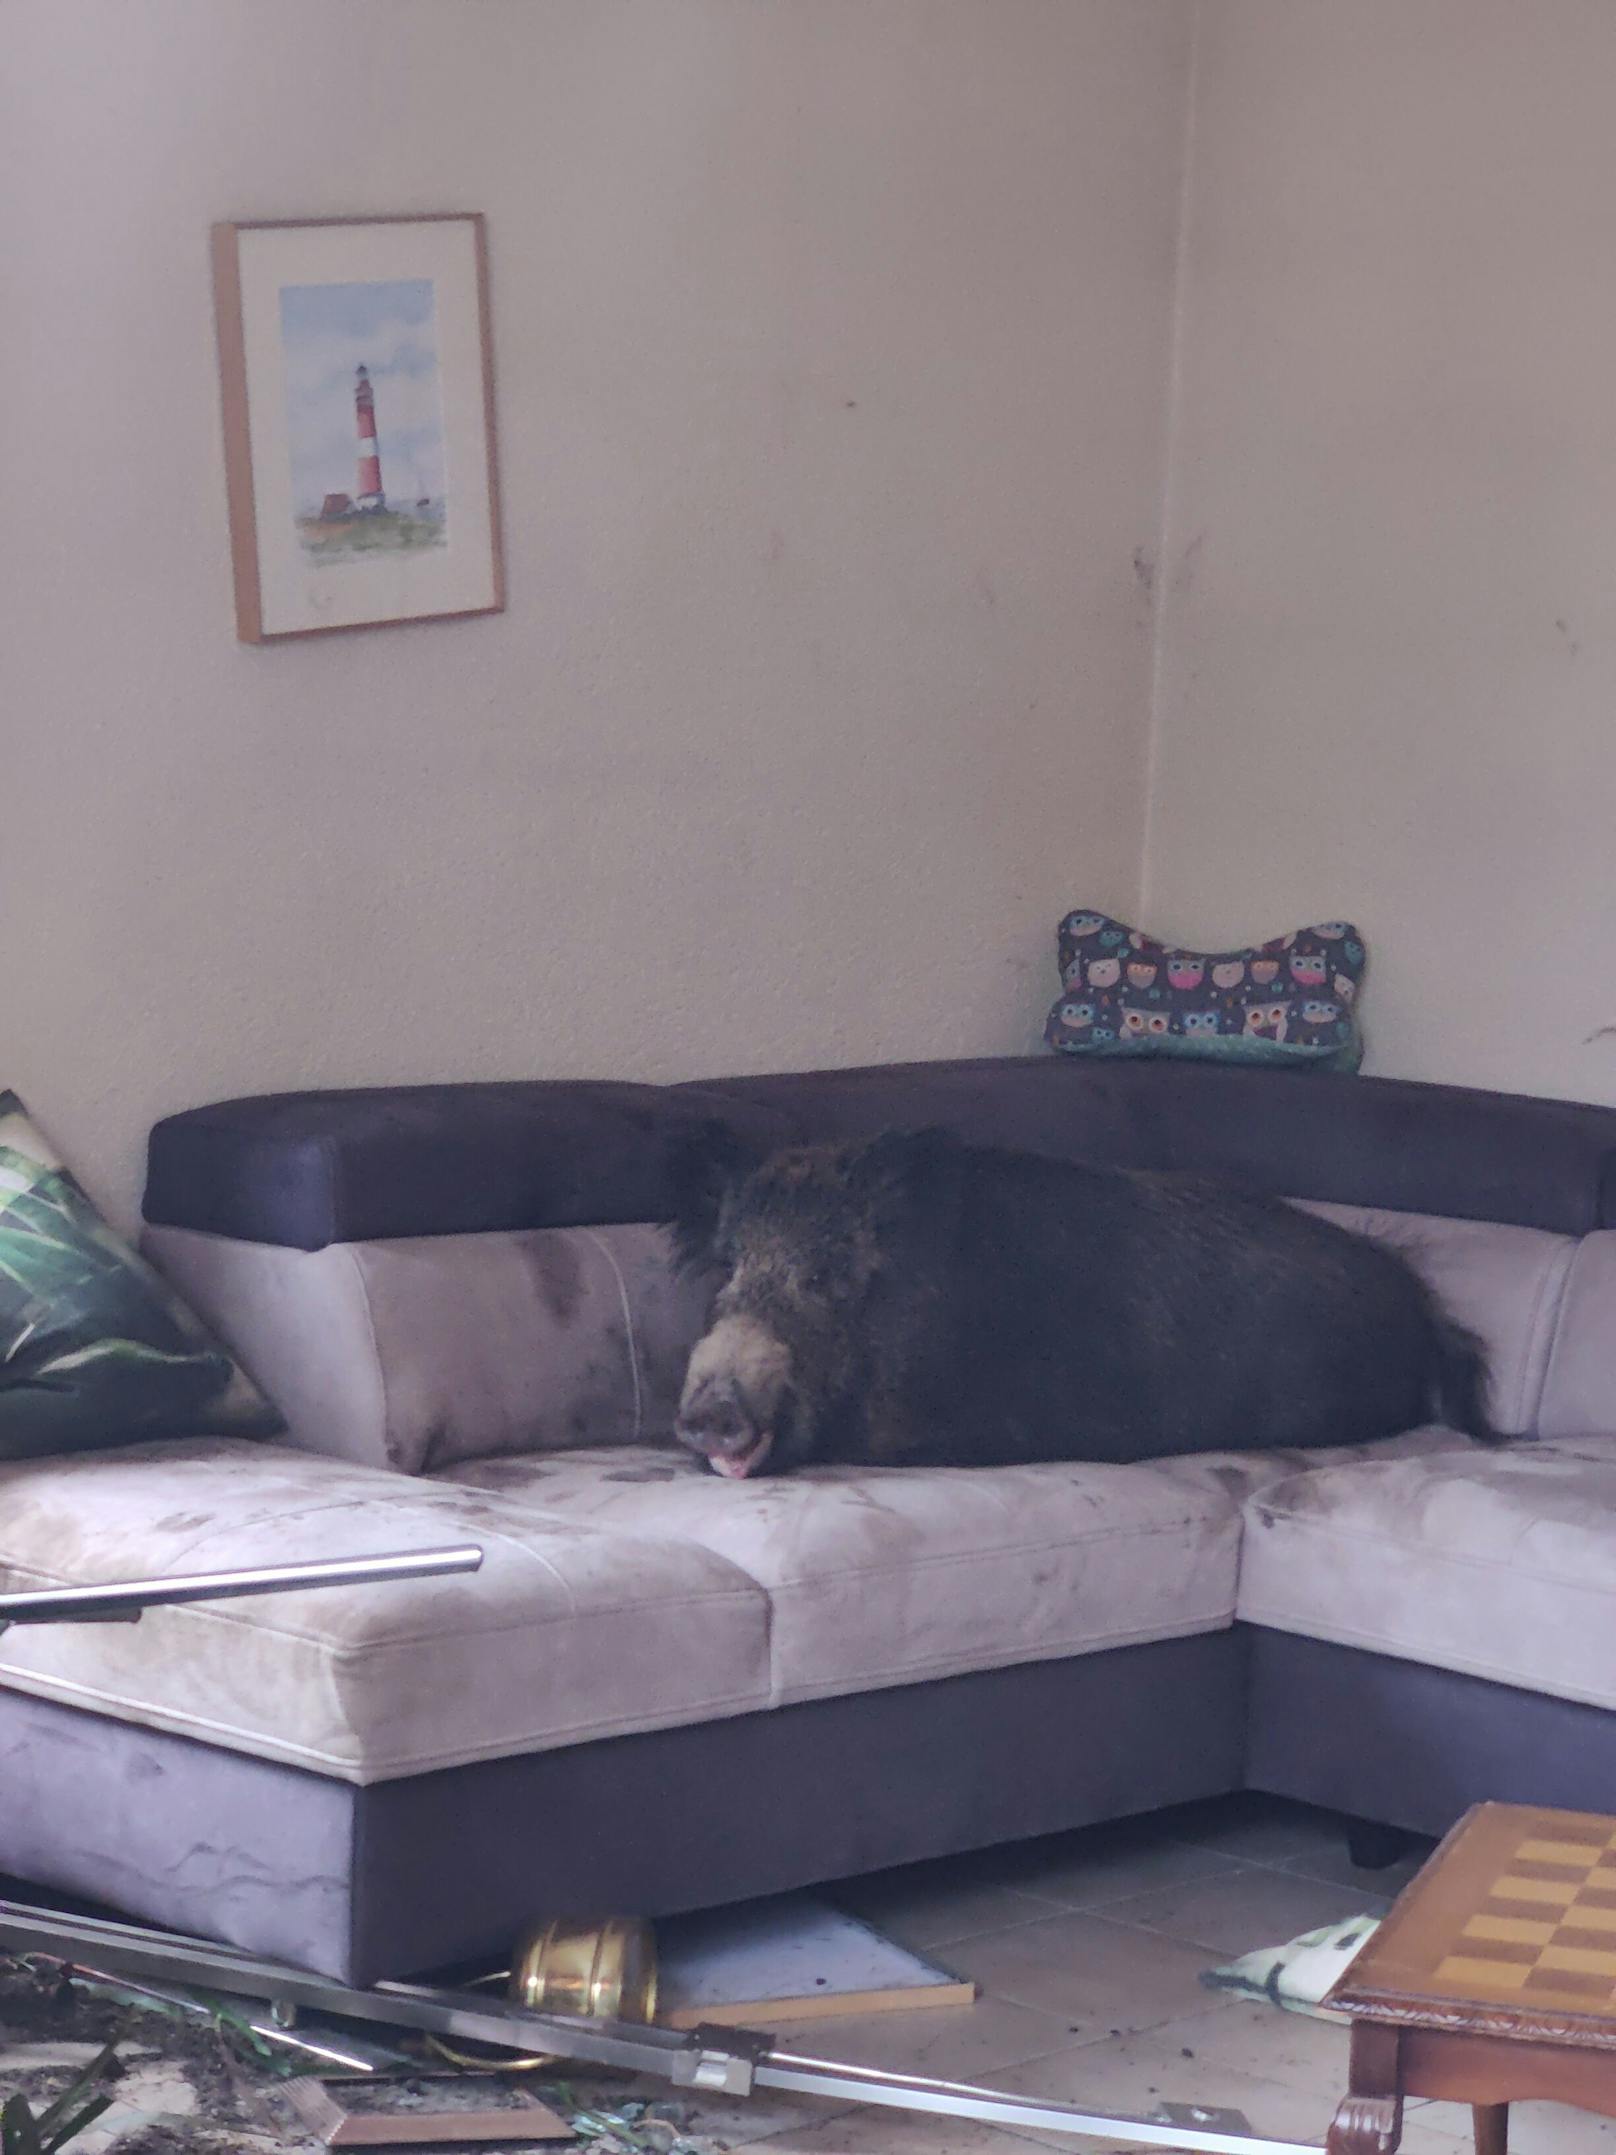 Wildschwein chillt auf Couch, lacht Polizei entgegen